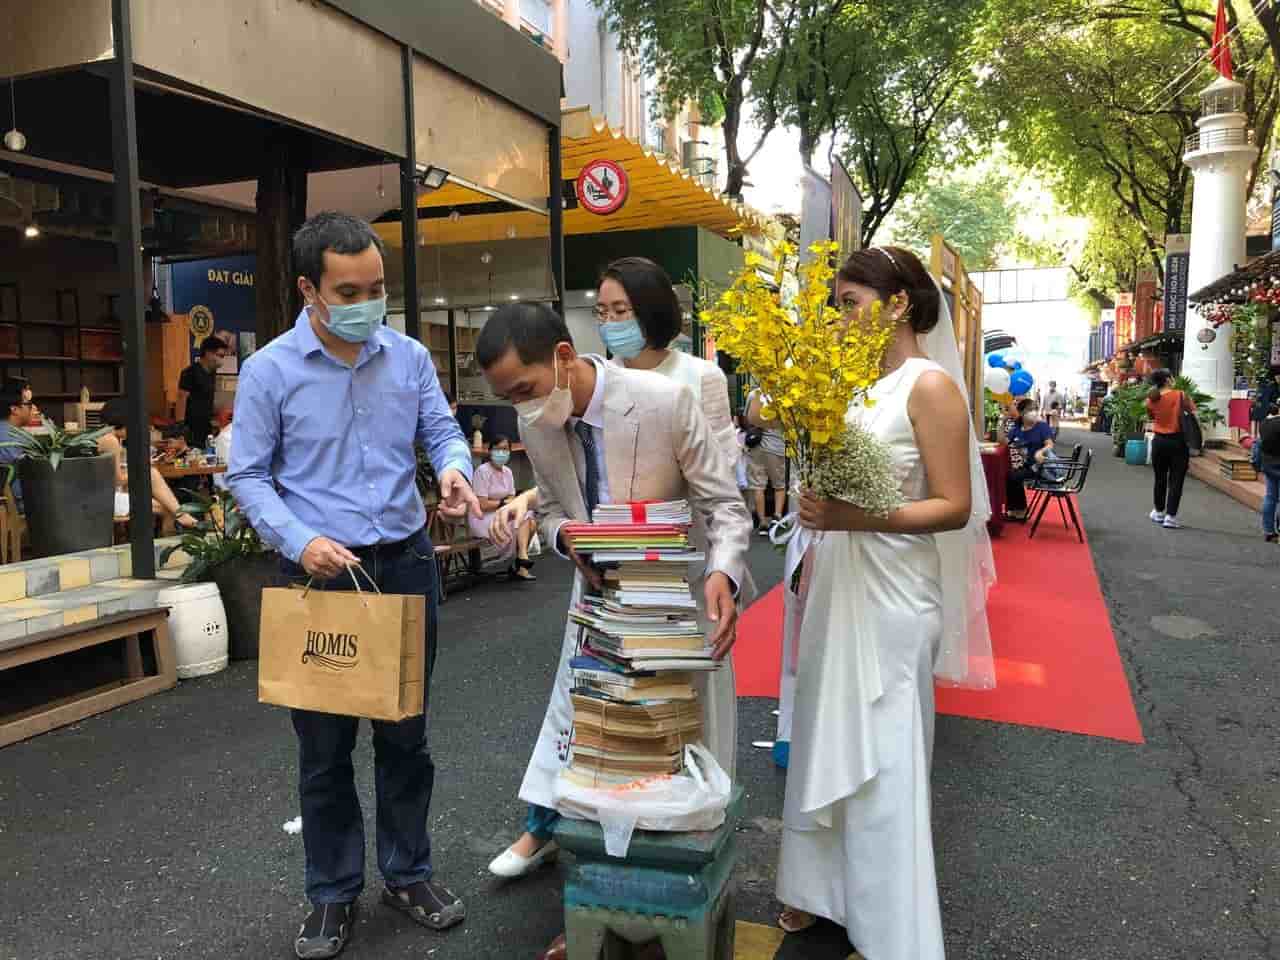 260131109 429585395446345 4103864869360750127 n Lễ cưới đặc biệt giữa Sài Gòn: Không nhận phong bì, chỉ nhận sách